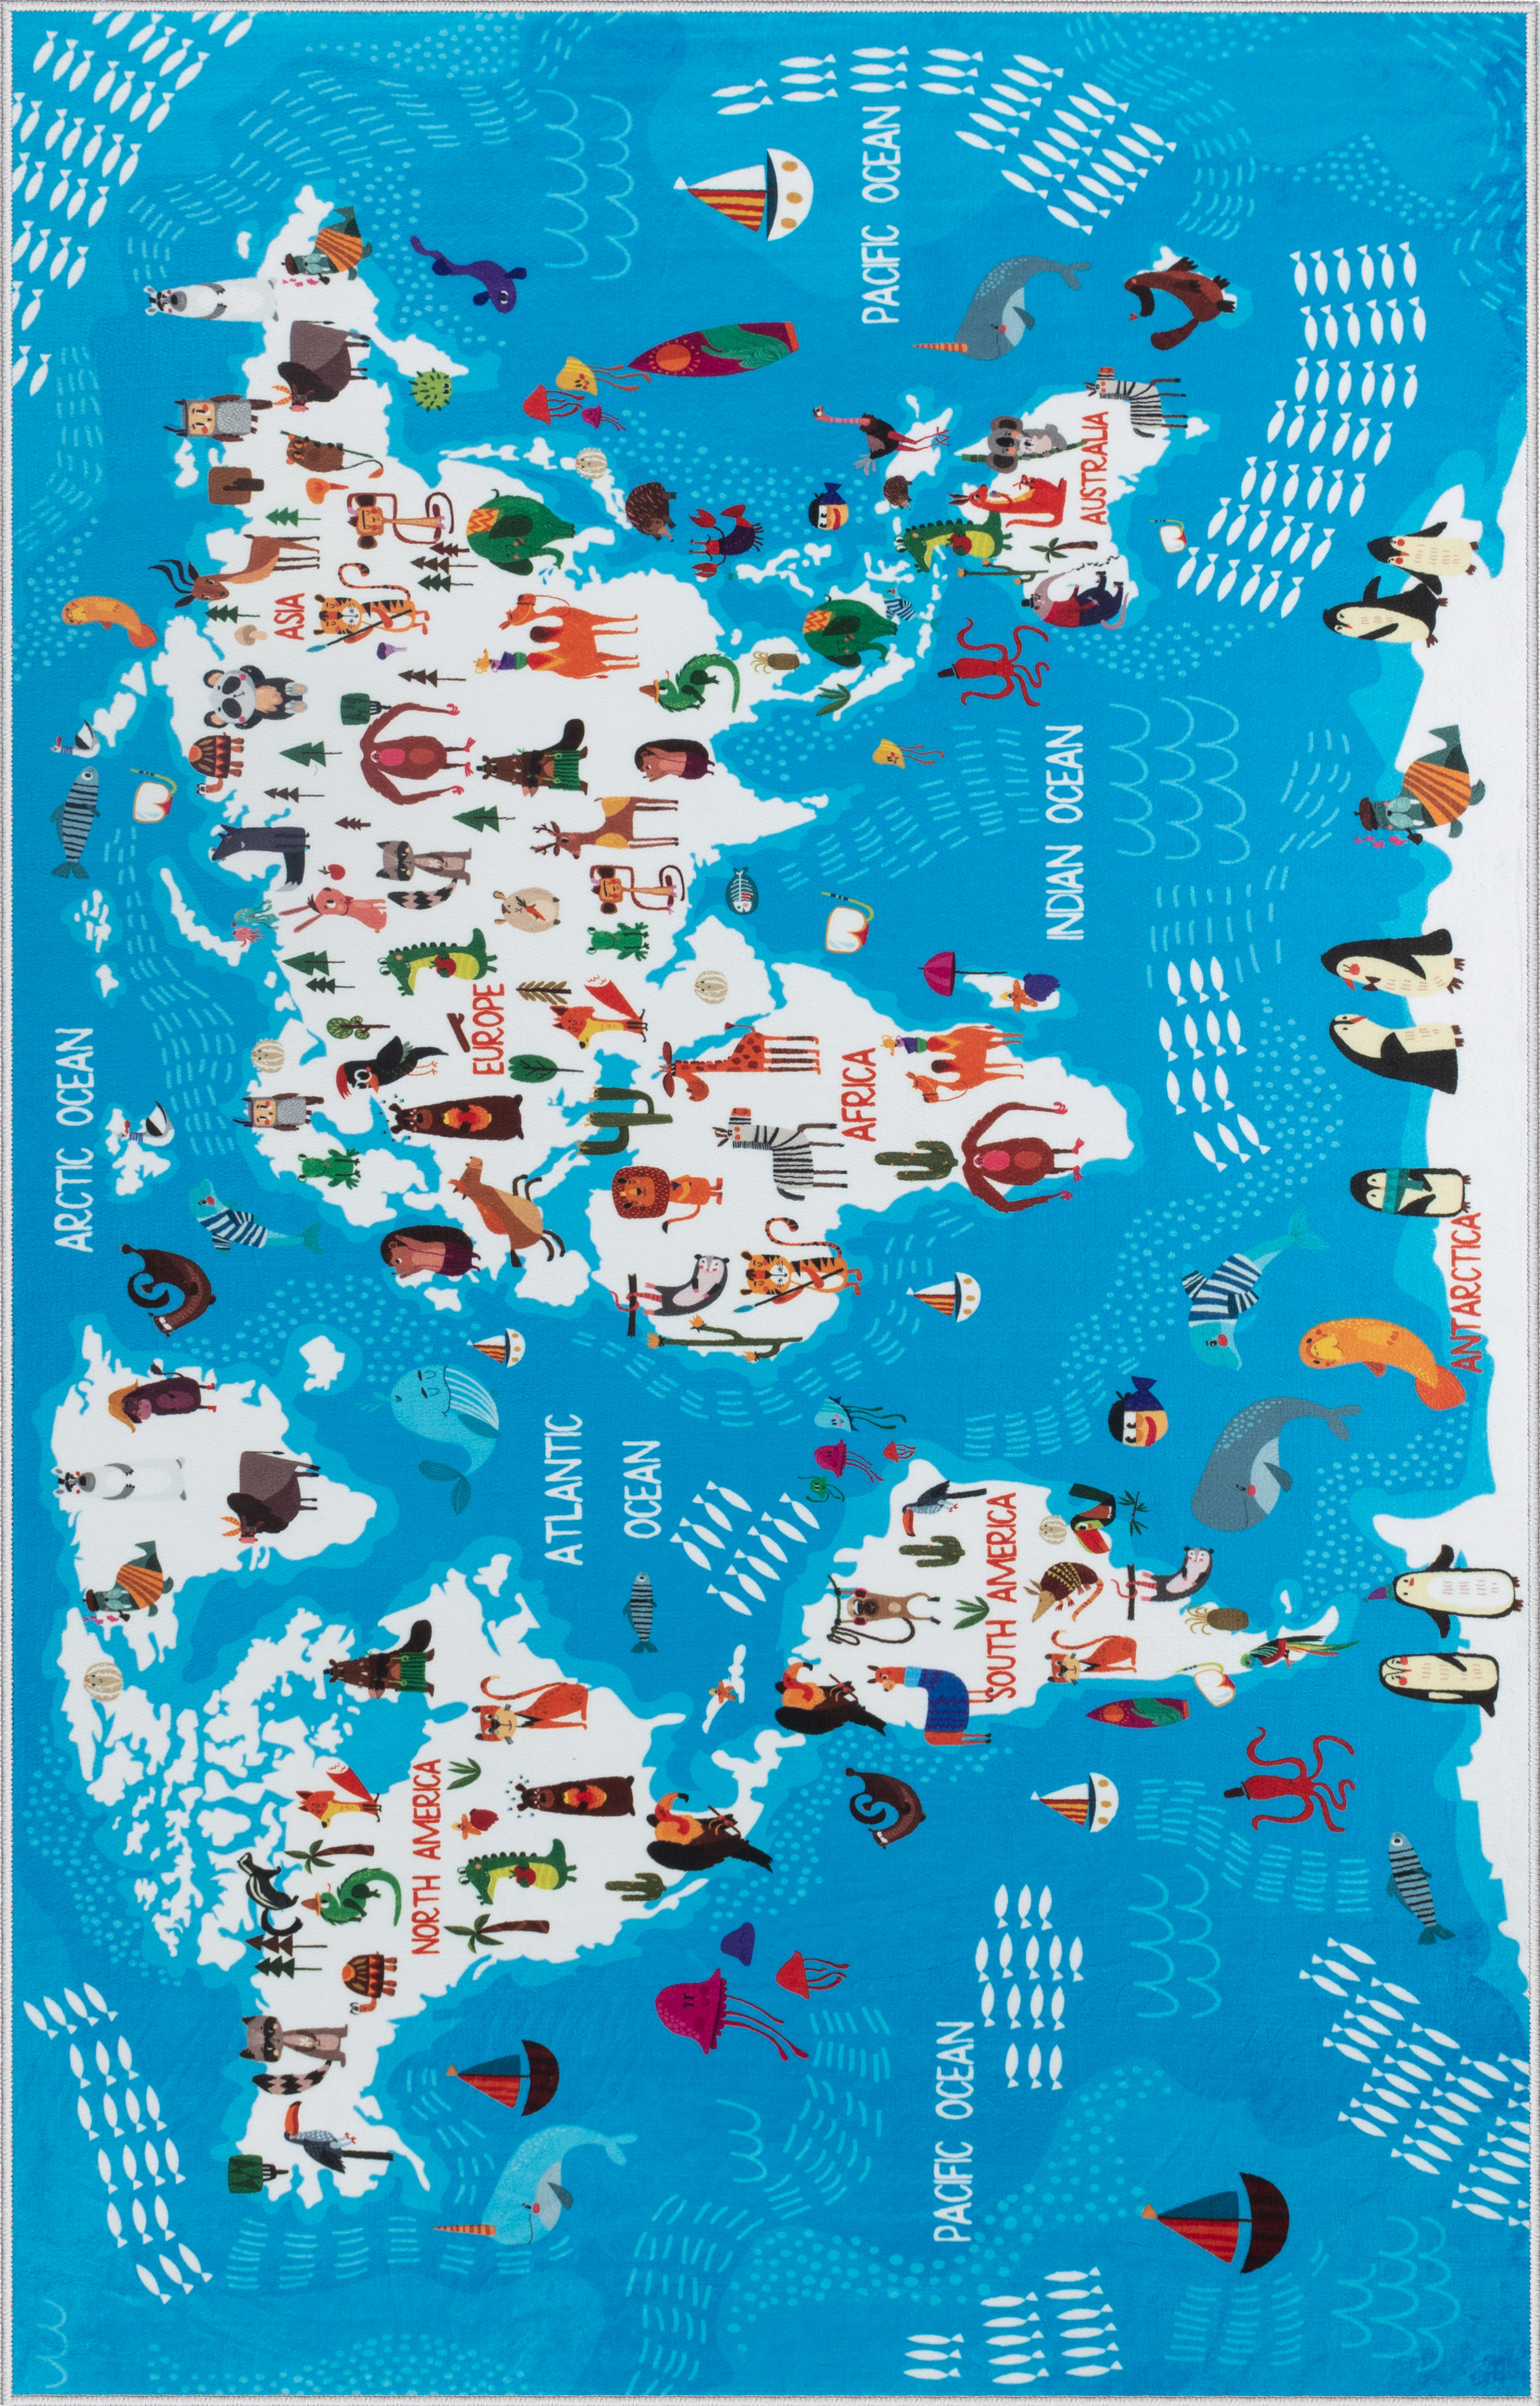 Ковер комнатный детский KOVRIKANA карта мира развивающий голубой океан 120см на 175см - фото 3